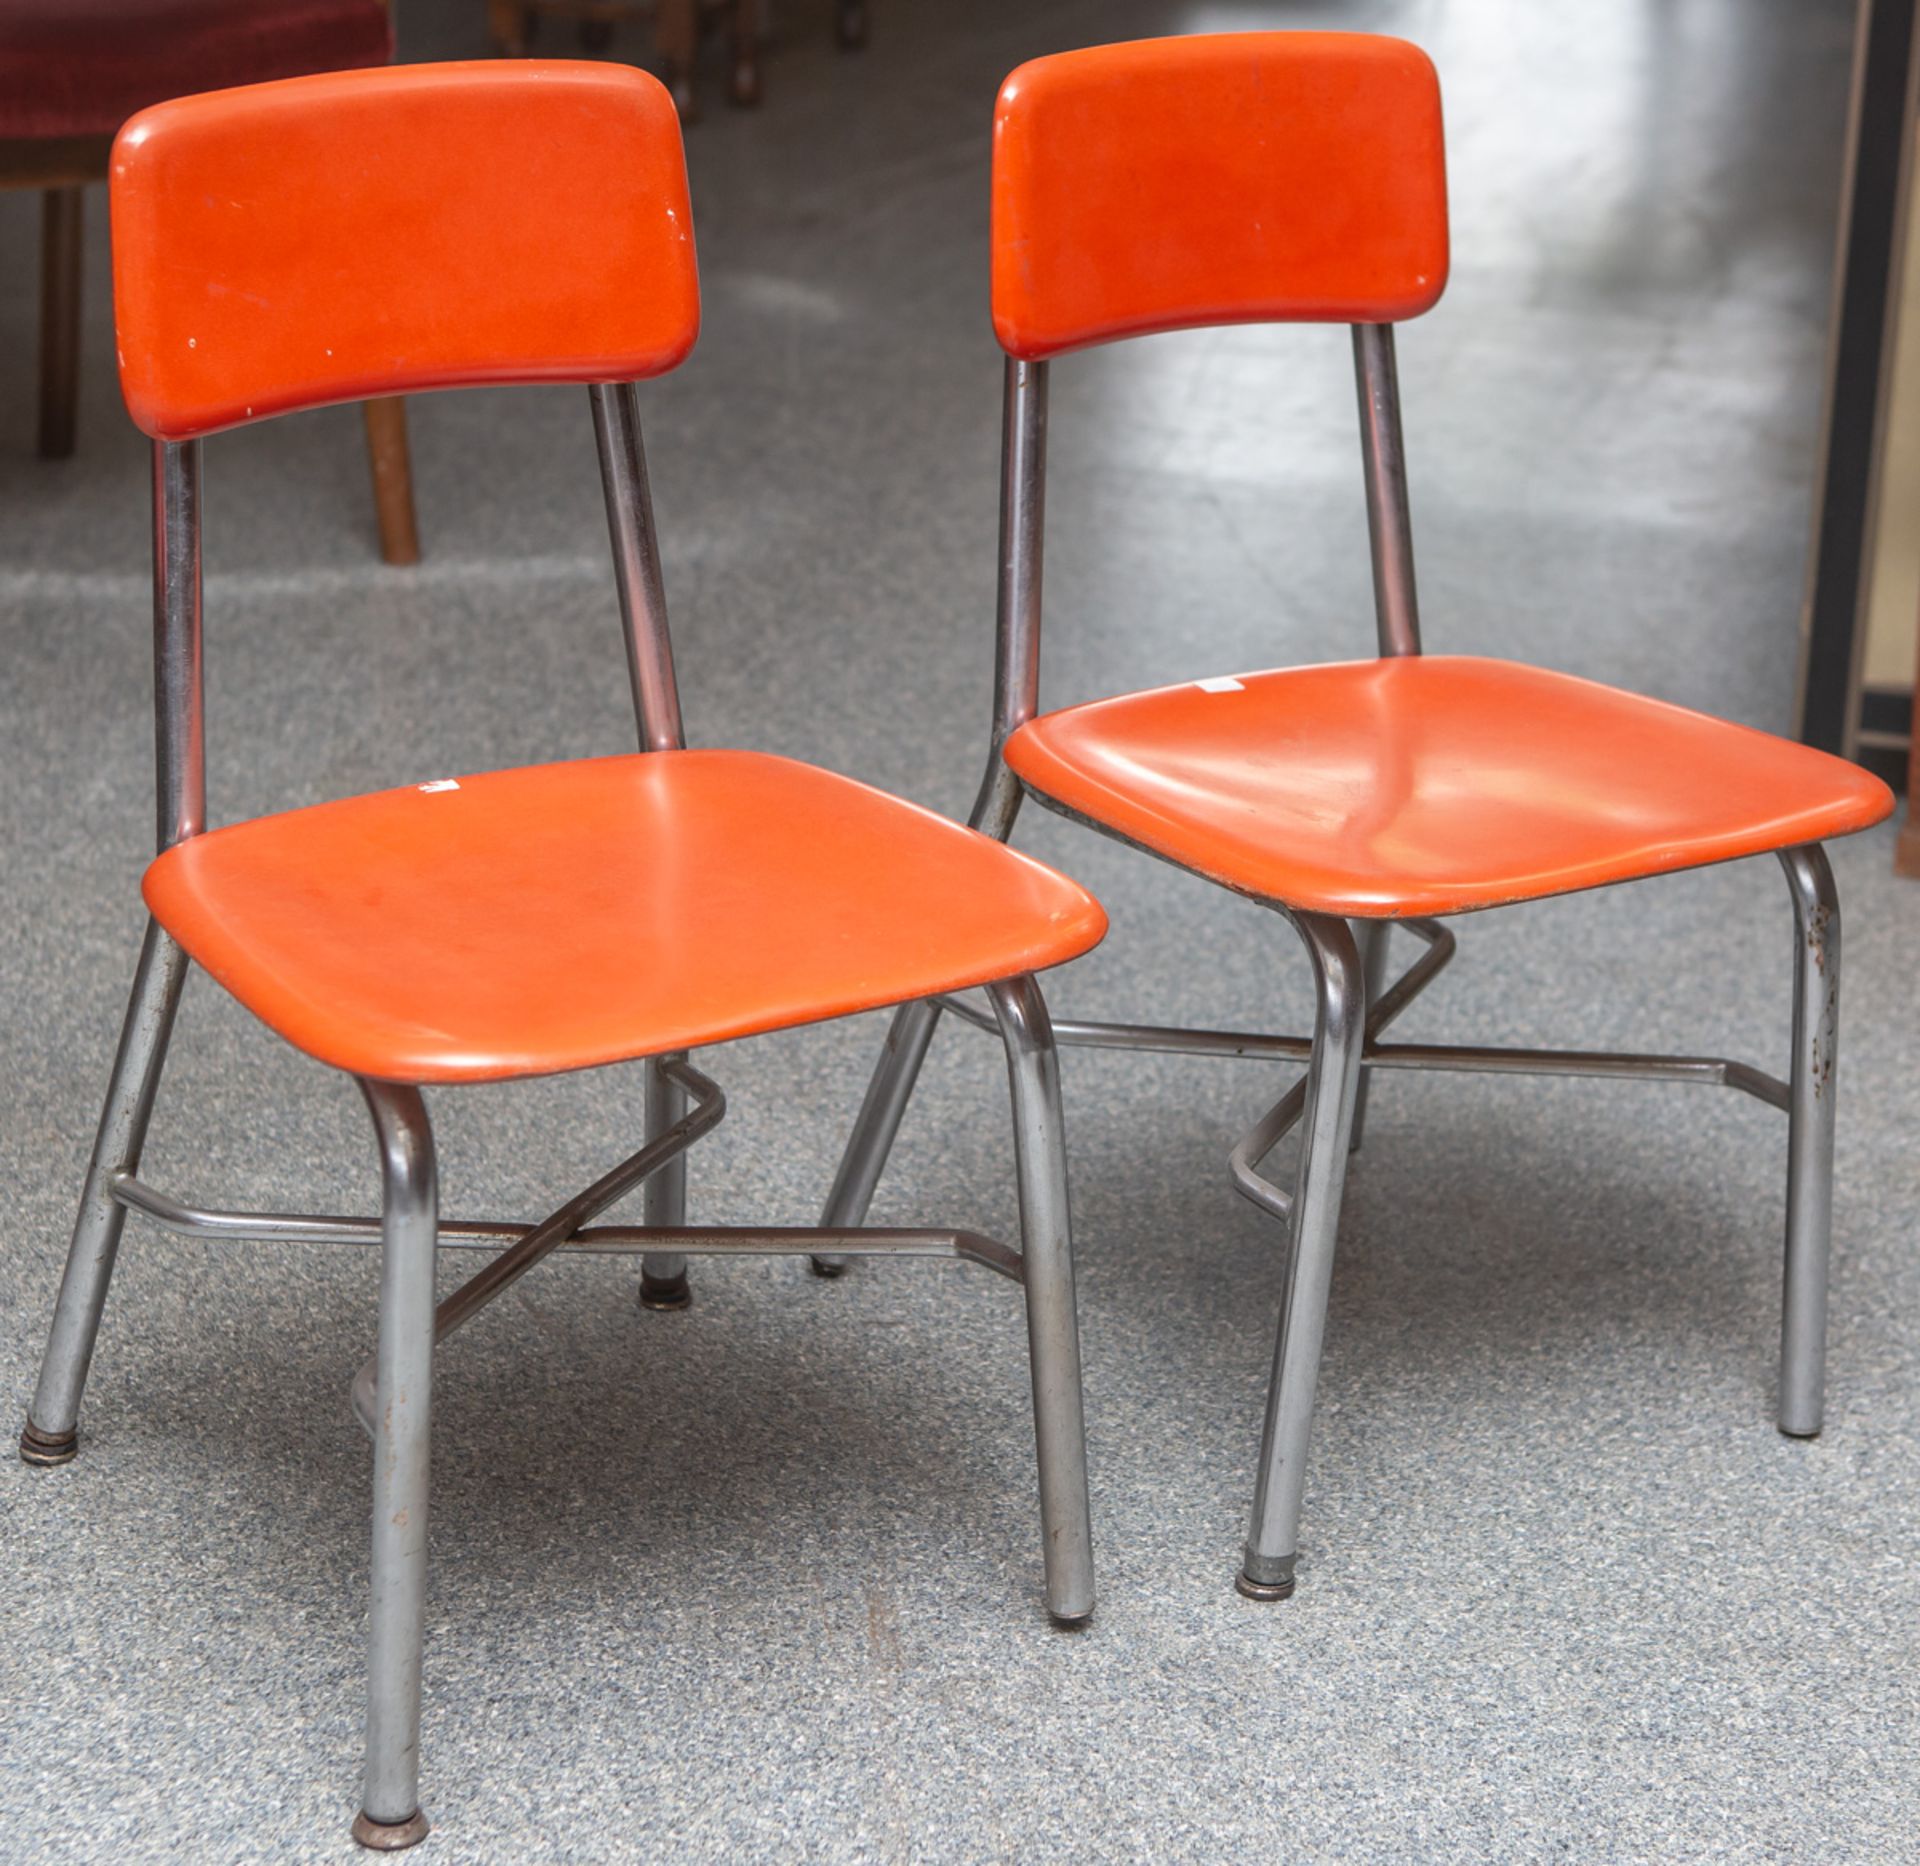 Schulstühle für Kinder "Hey Woodite" (Heywood Wakefield, 1960er Jahre), orangefarbenerKunststoff,